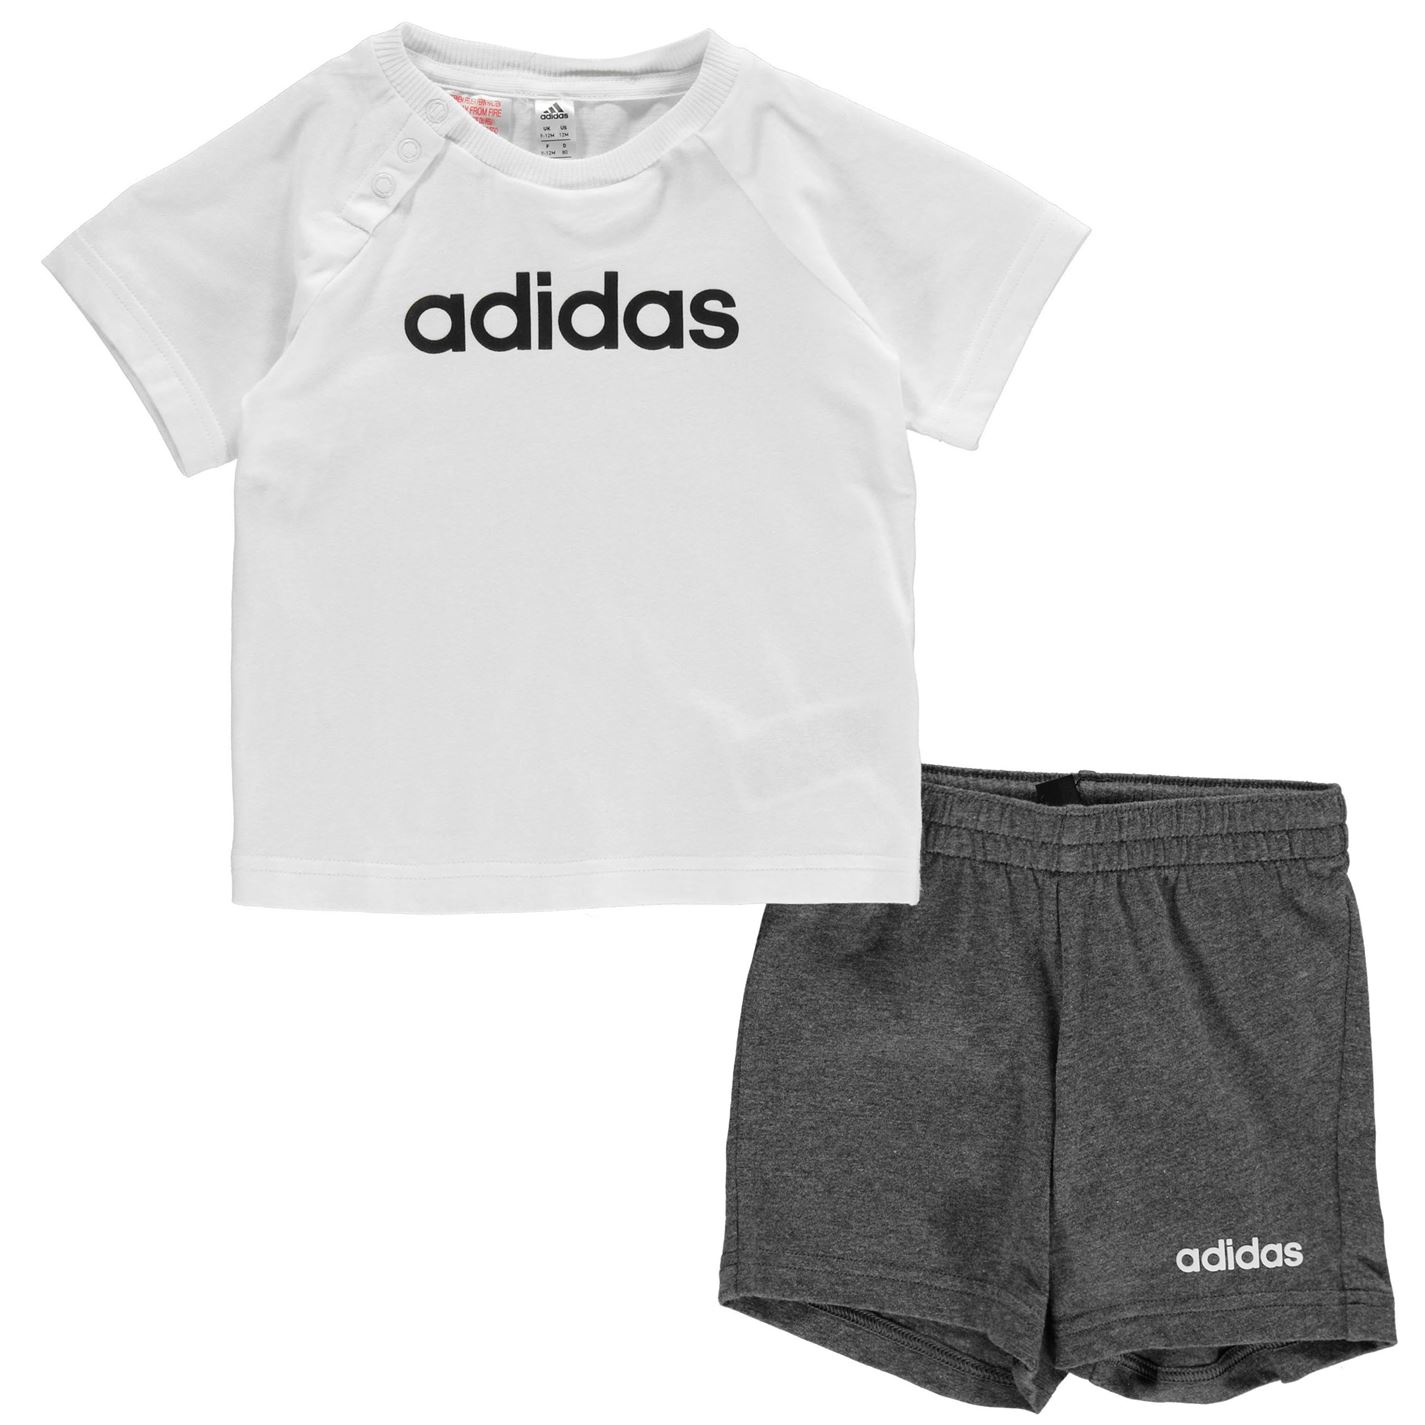 Adidas T Shirt and Shorts Set Baby Boys